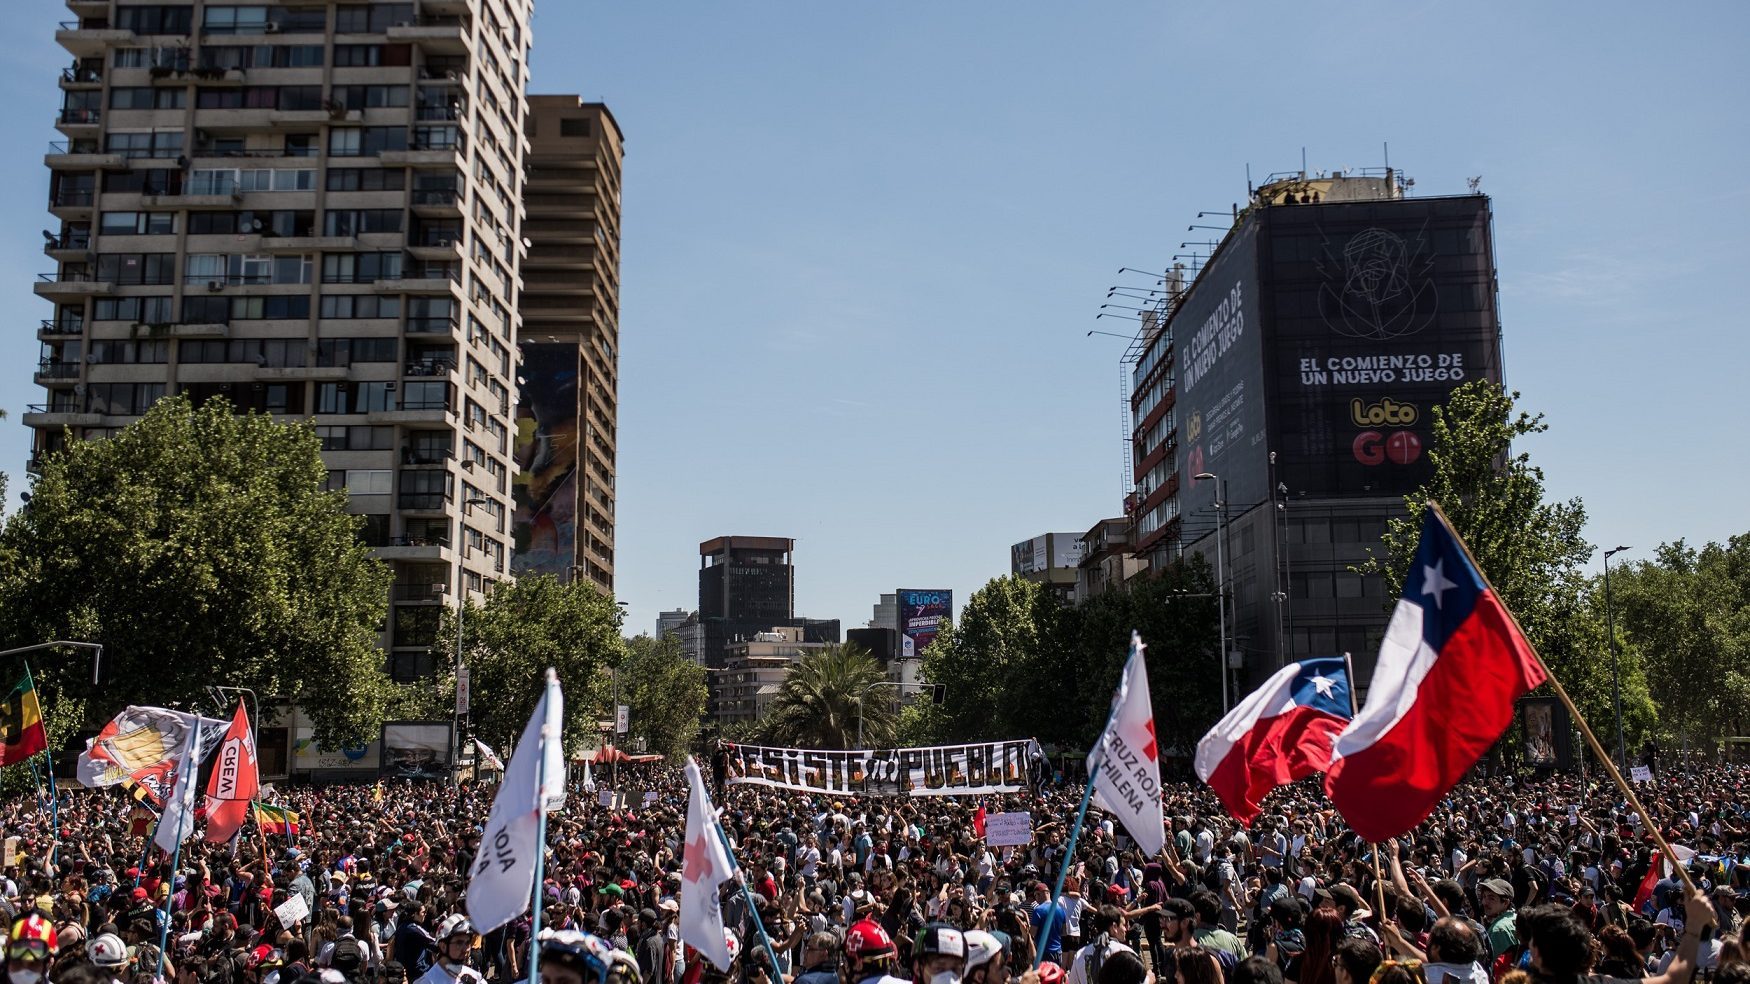 Gran cantidad de personas marchando en las calles de Chile en el 2019.